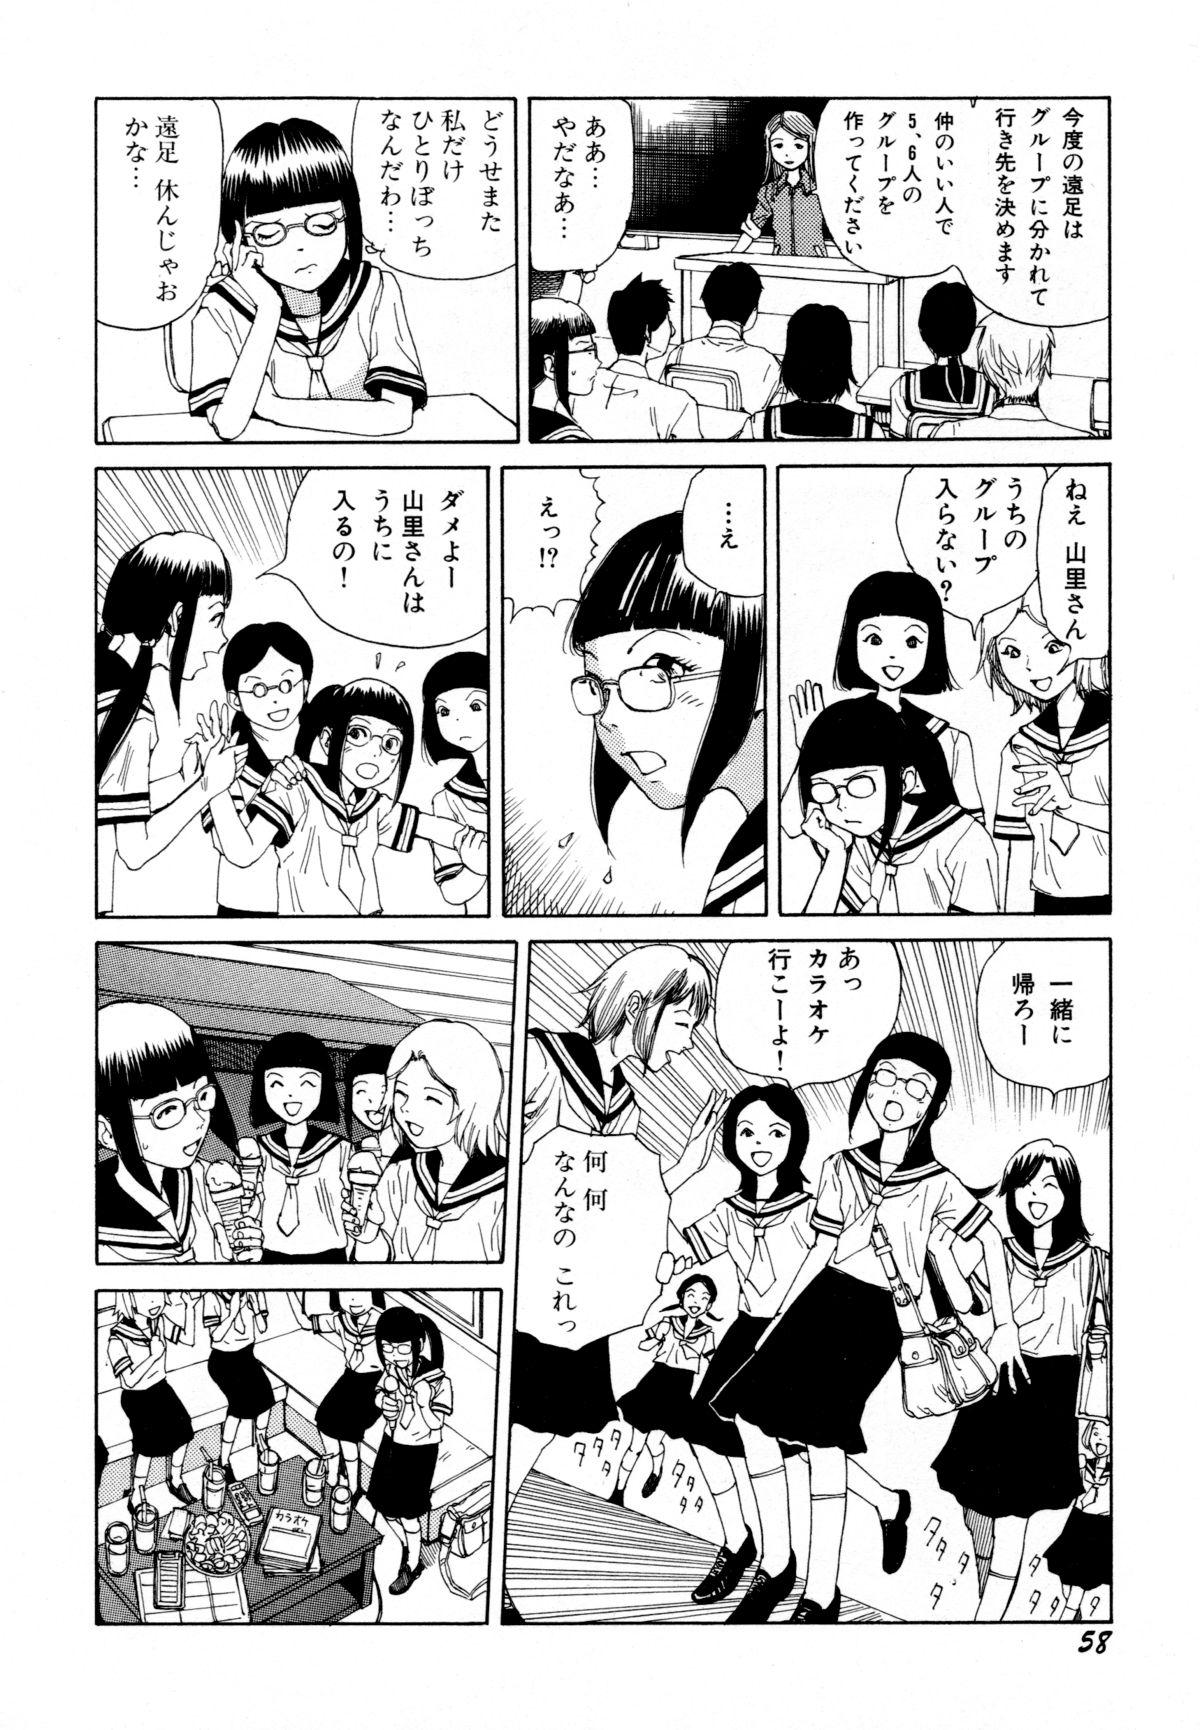 Arijigoku vs Barabara Shoujo - Antlion vs BaraBara Girl 59